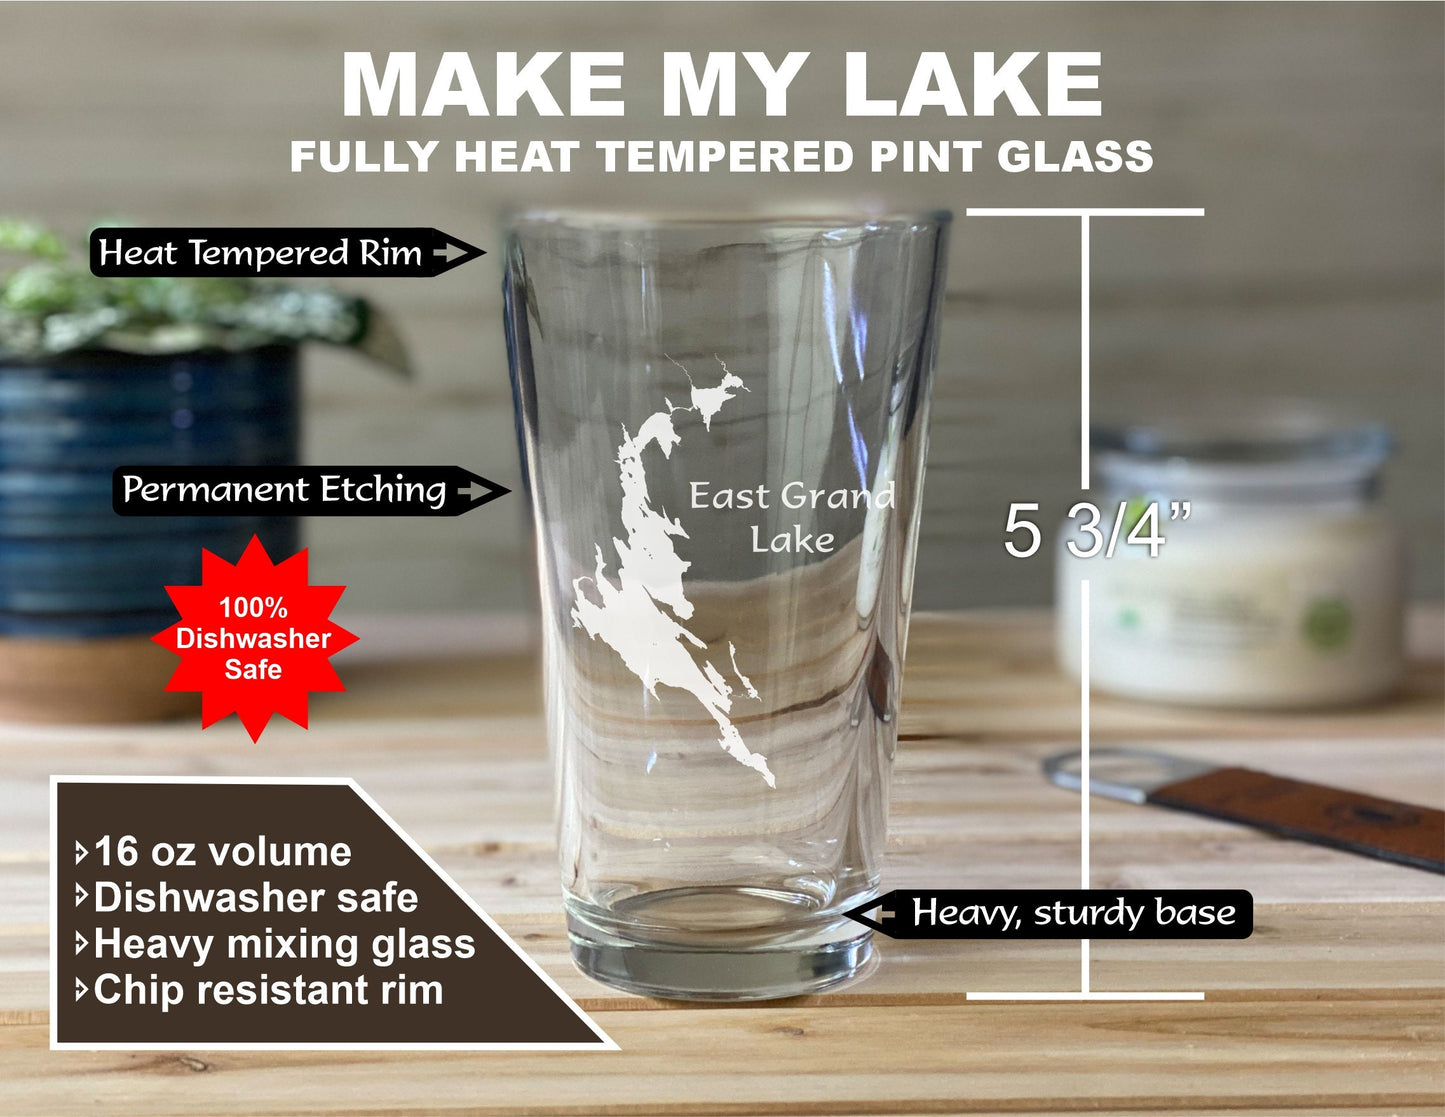 Make My Lake Pint glass